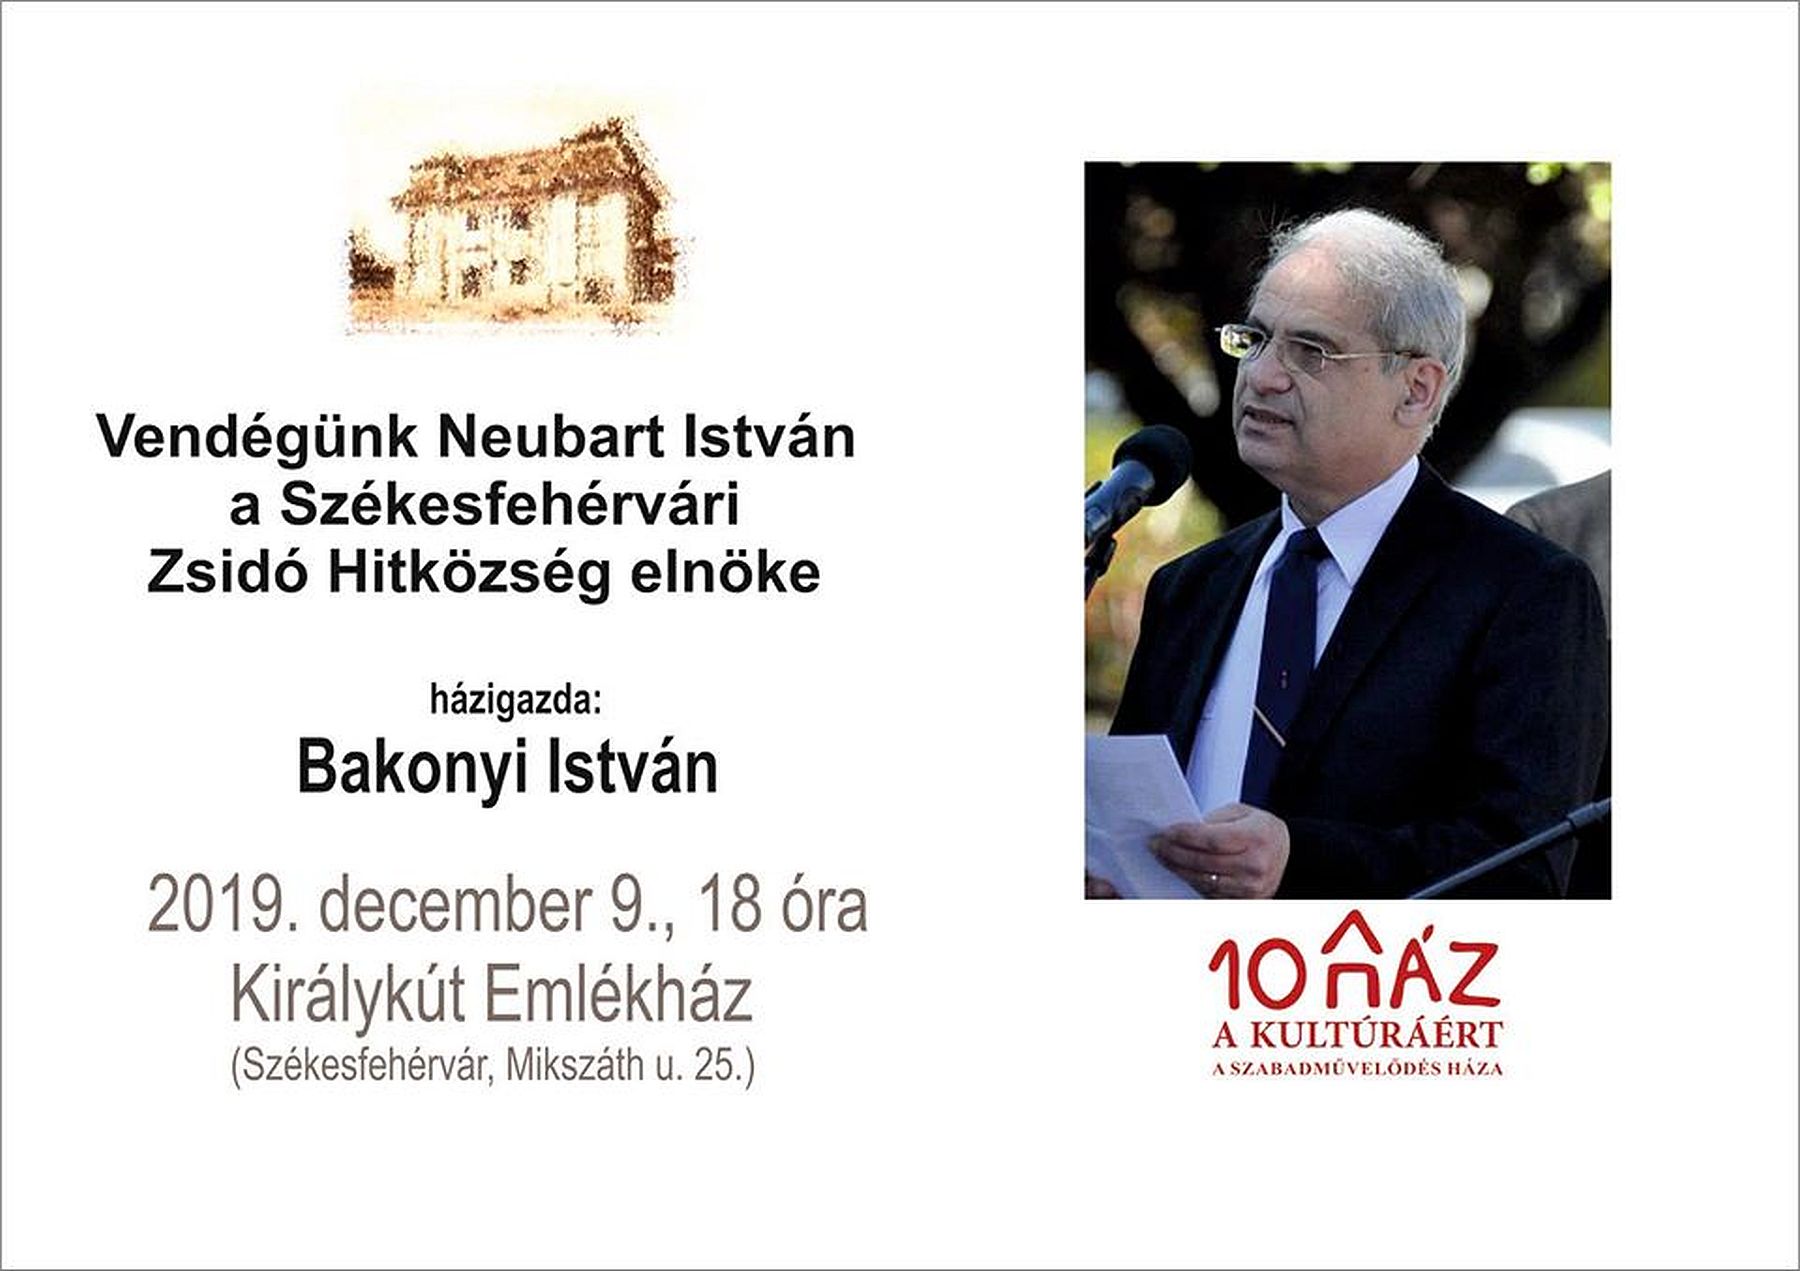 Neubart István, a Székesfehérvári Zsidó Hitközség elnöke lesz a vendég a Királykút Emlékházban